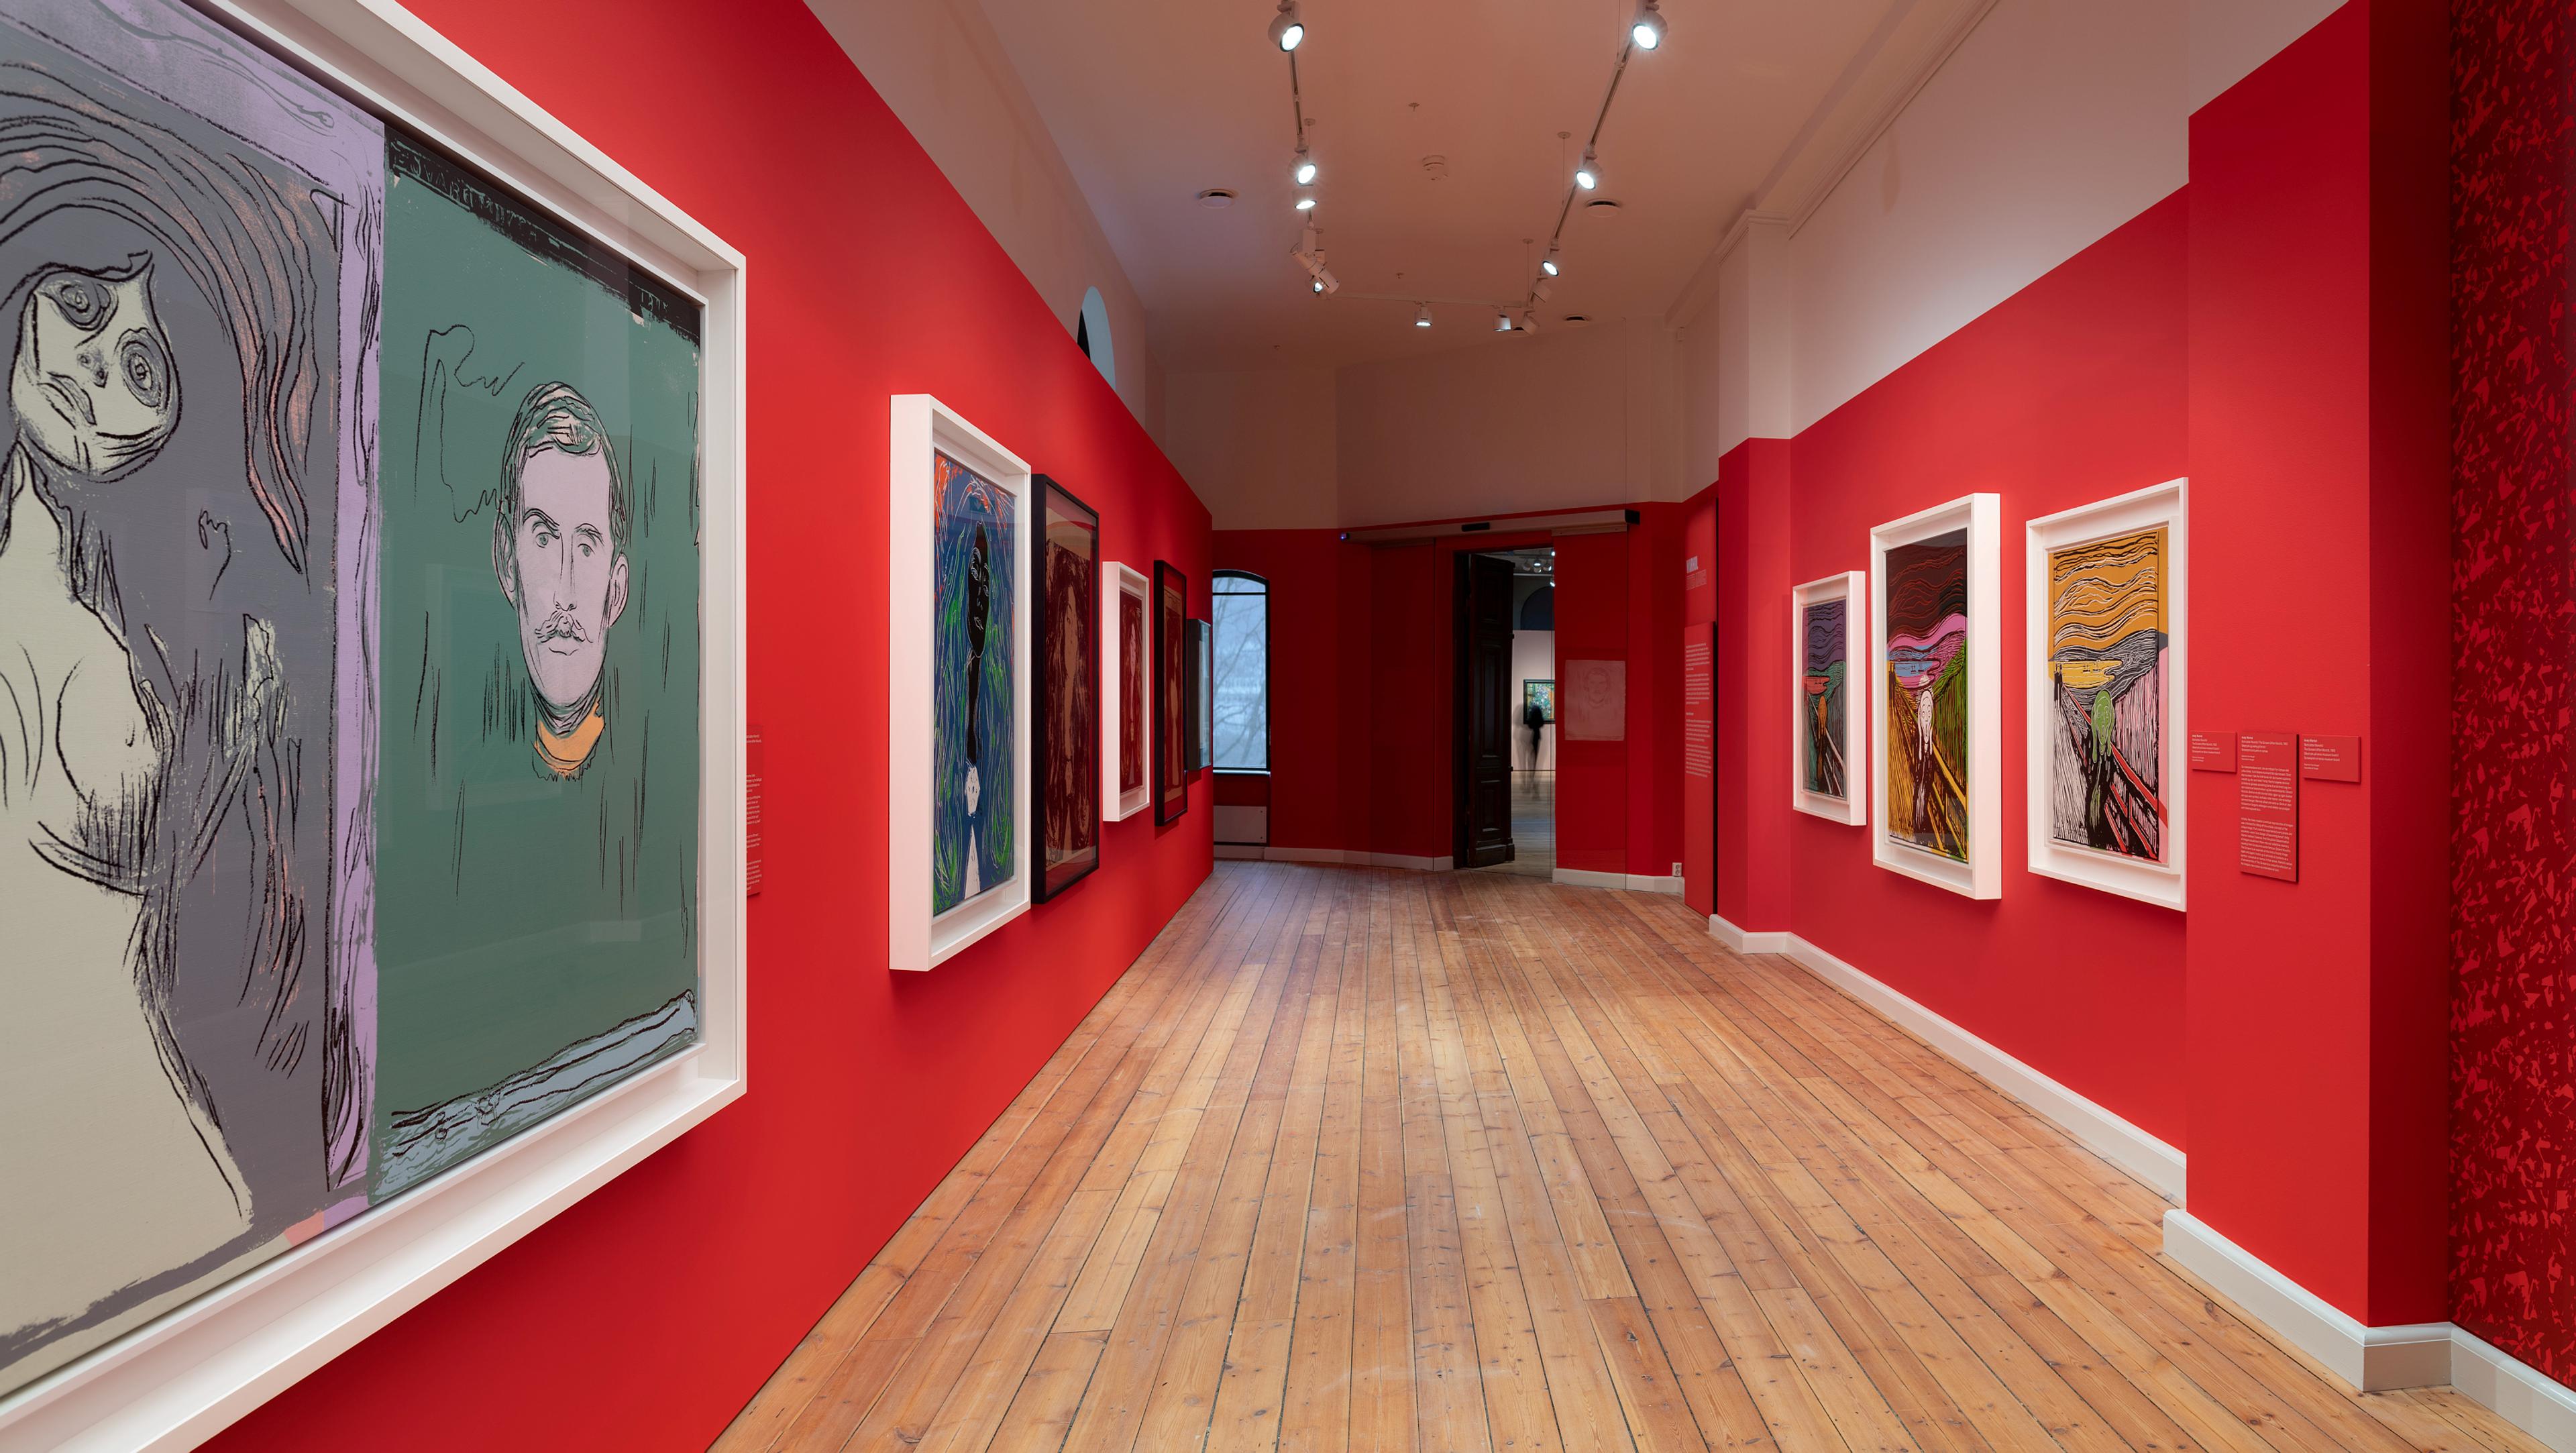 En rekke malerier av Andy Warhol i utstillingen brikker, i et rom med røde vegger